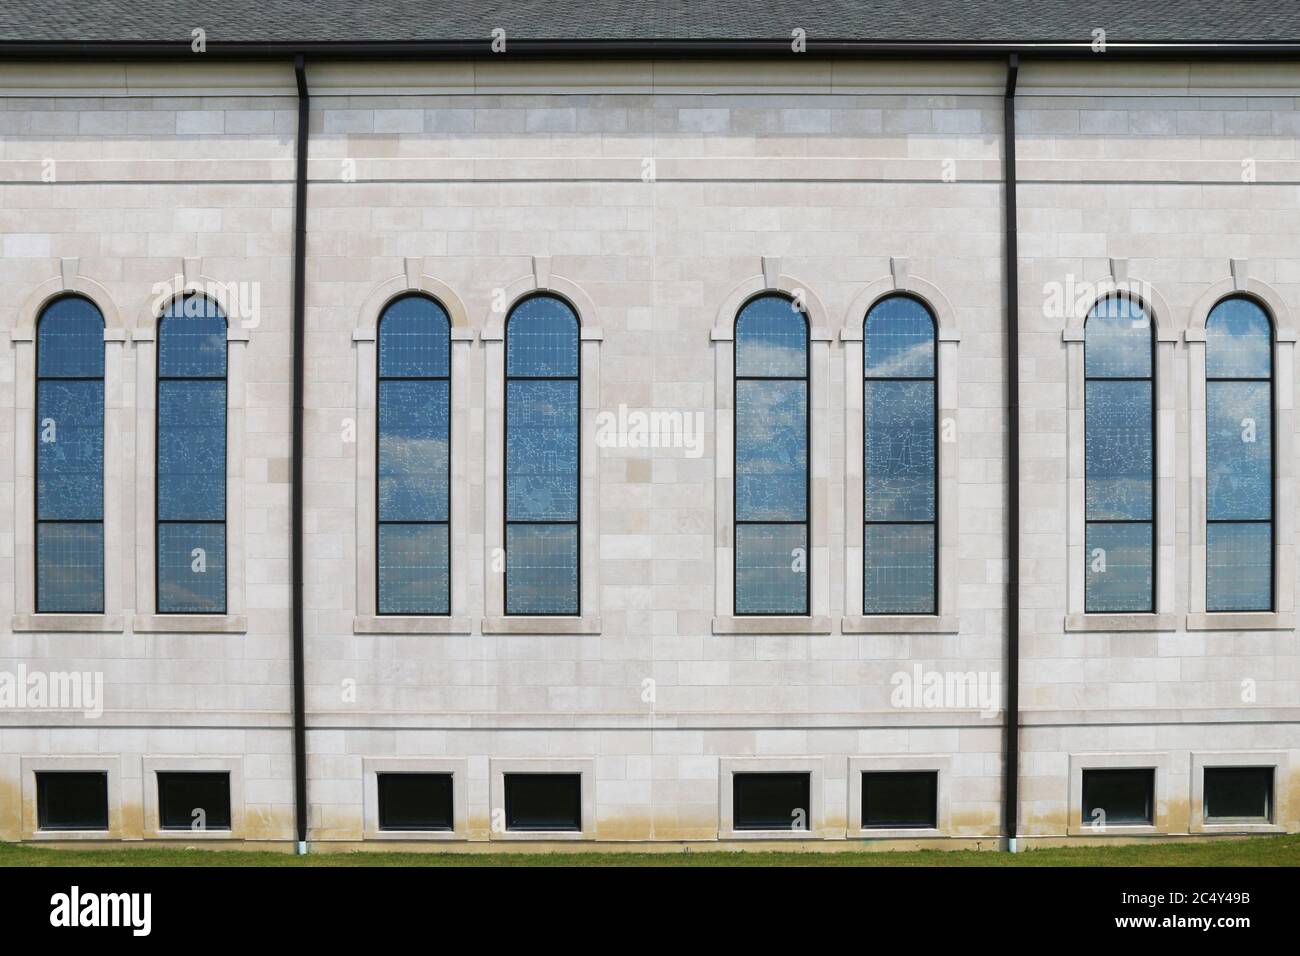 ensemble de l'église gothique assortie de vitraux clairs fenêtres voûtées Banque D'Images